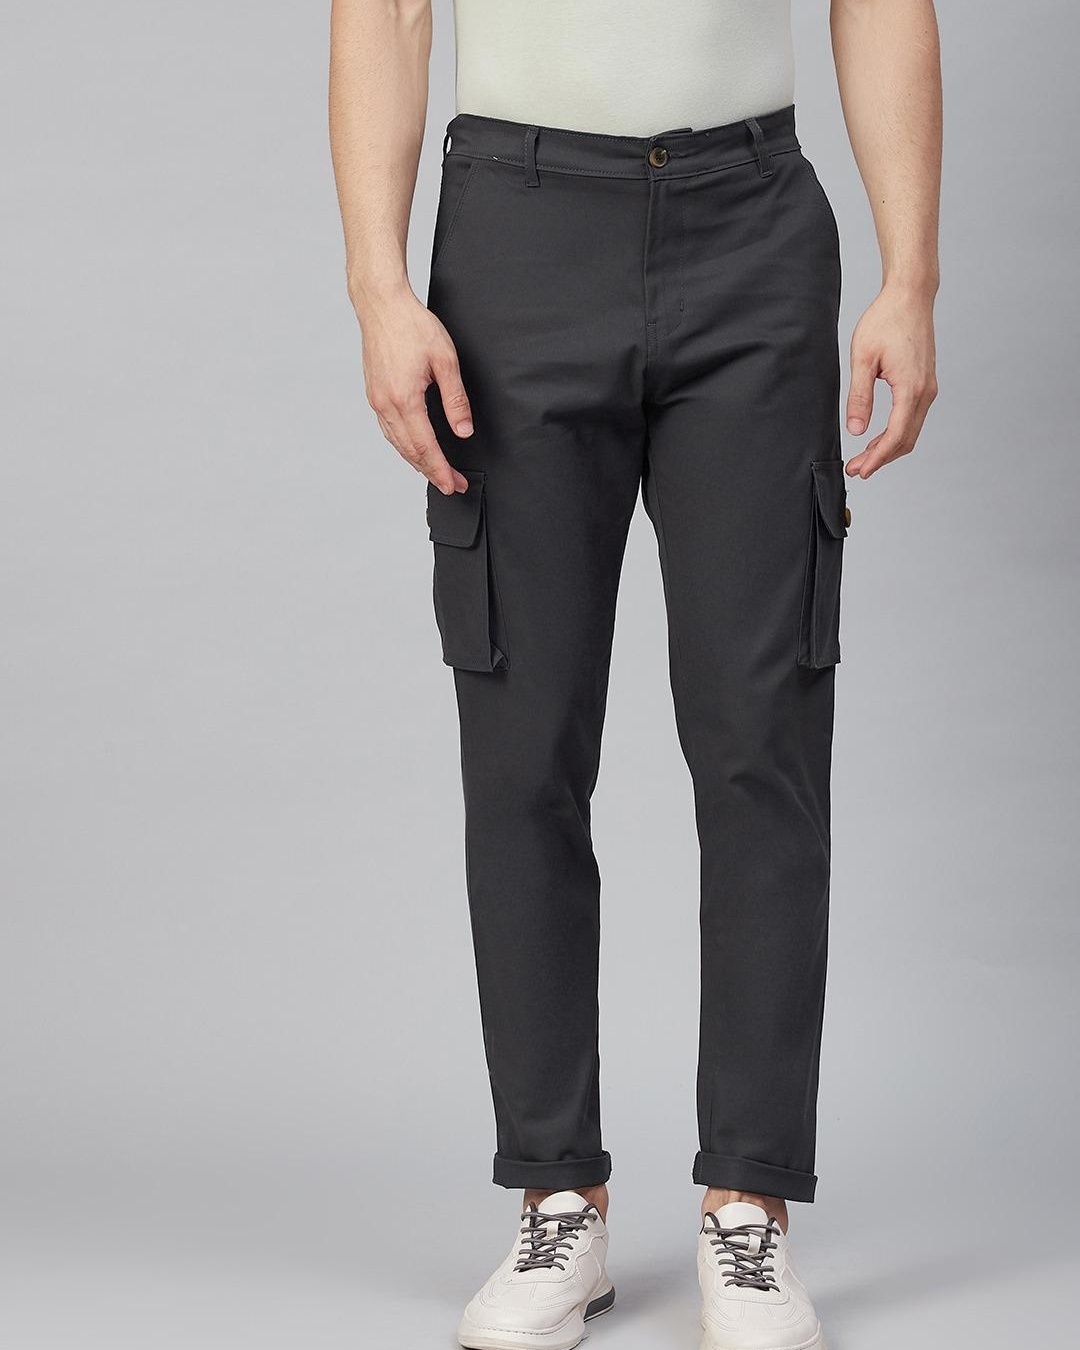 Buy Mens Rust Slim Fit Cargo Trousers for Men Grey Online at Bewakoof